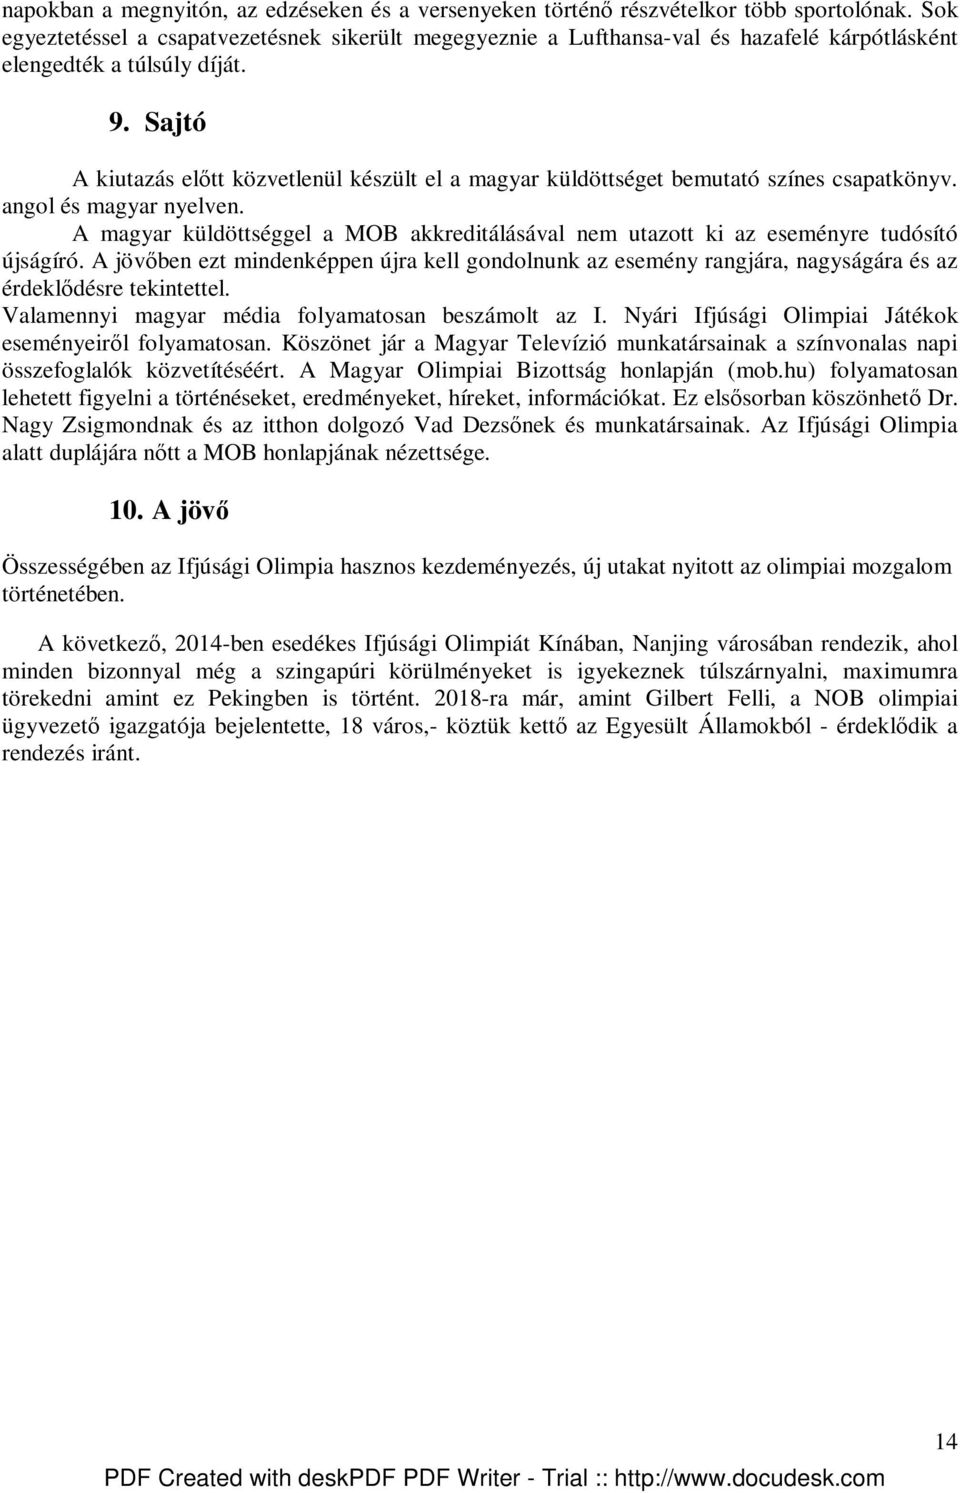 Sajtó A kiutazás elıtt közvetlenül készült el a magyar küldöttséget bemutató színes csapatkönyv. angol és magyar nyelven.